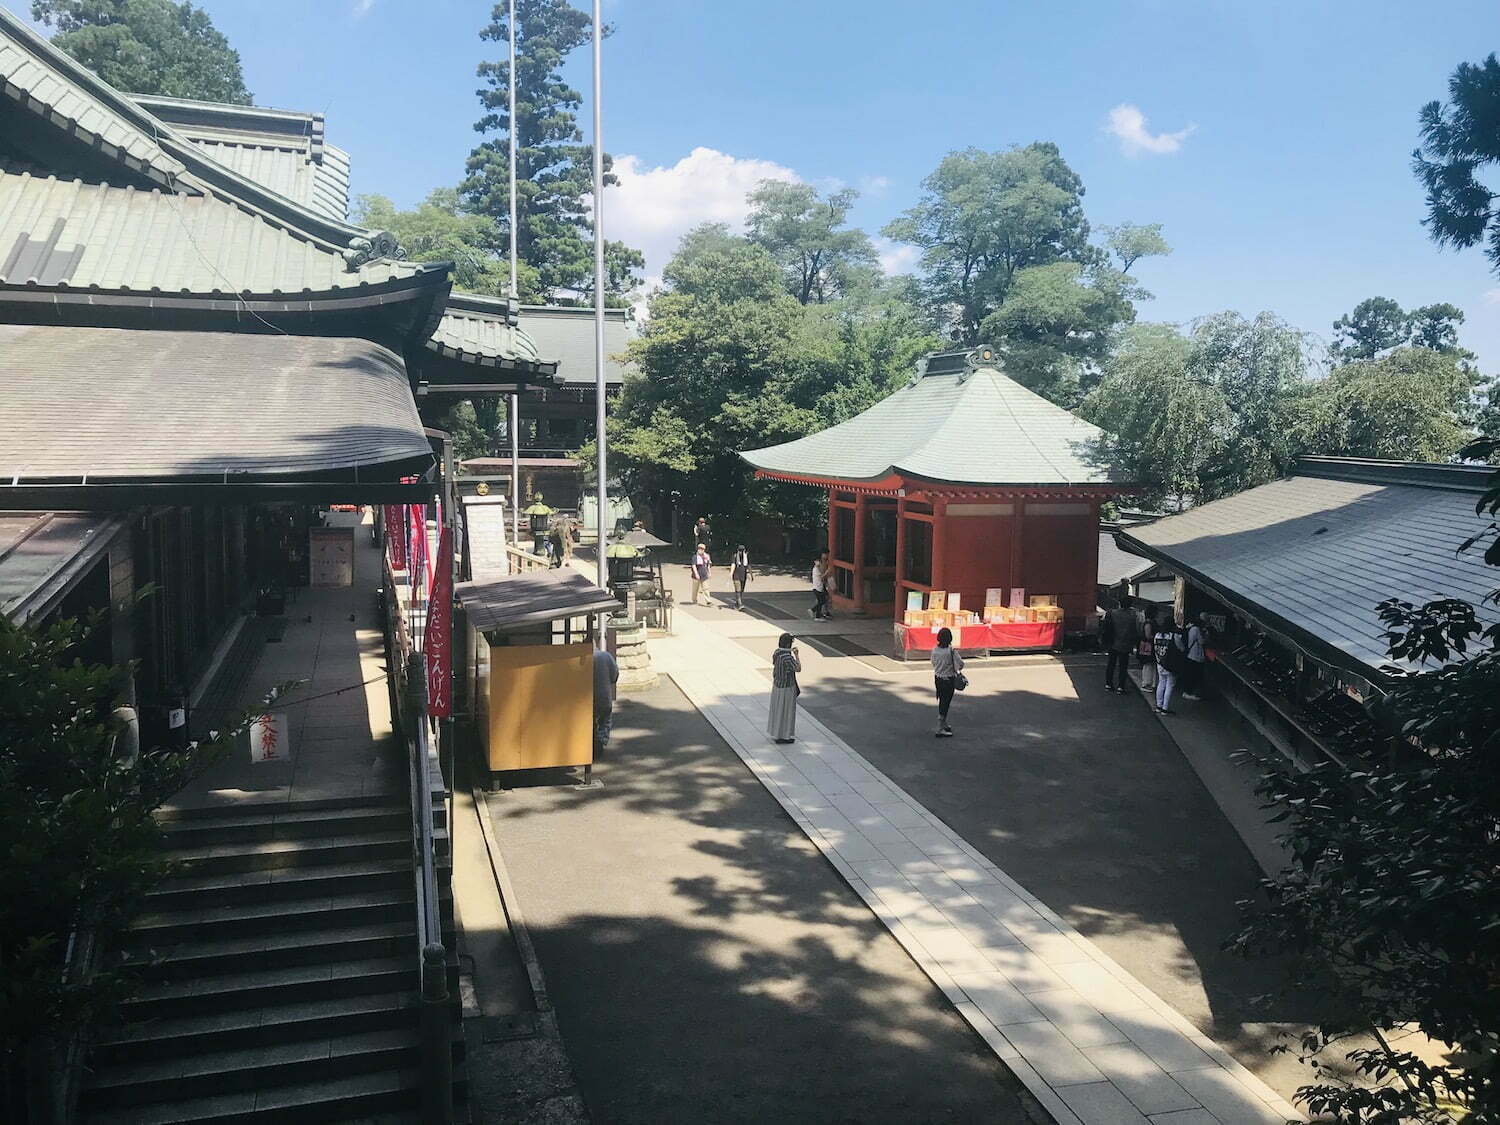 Takaosan temple